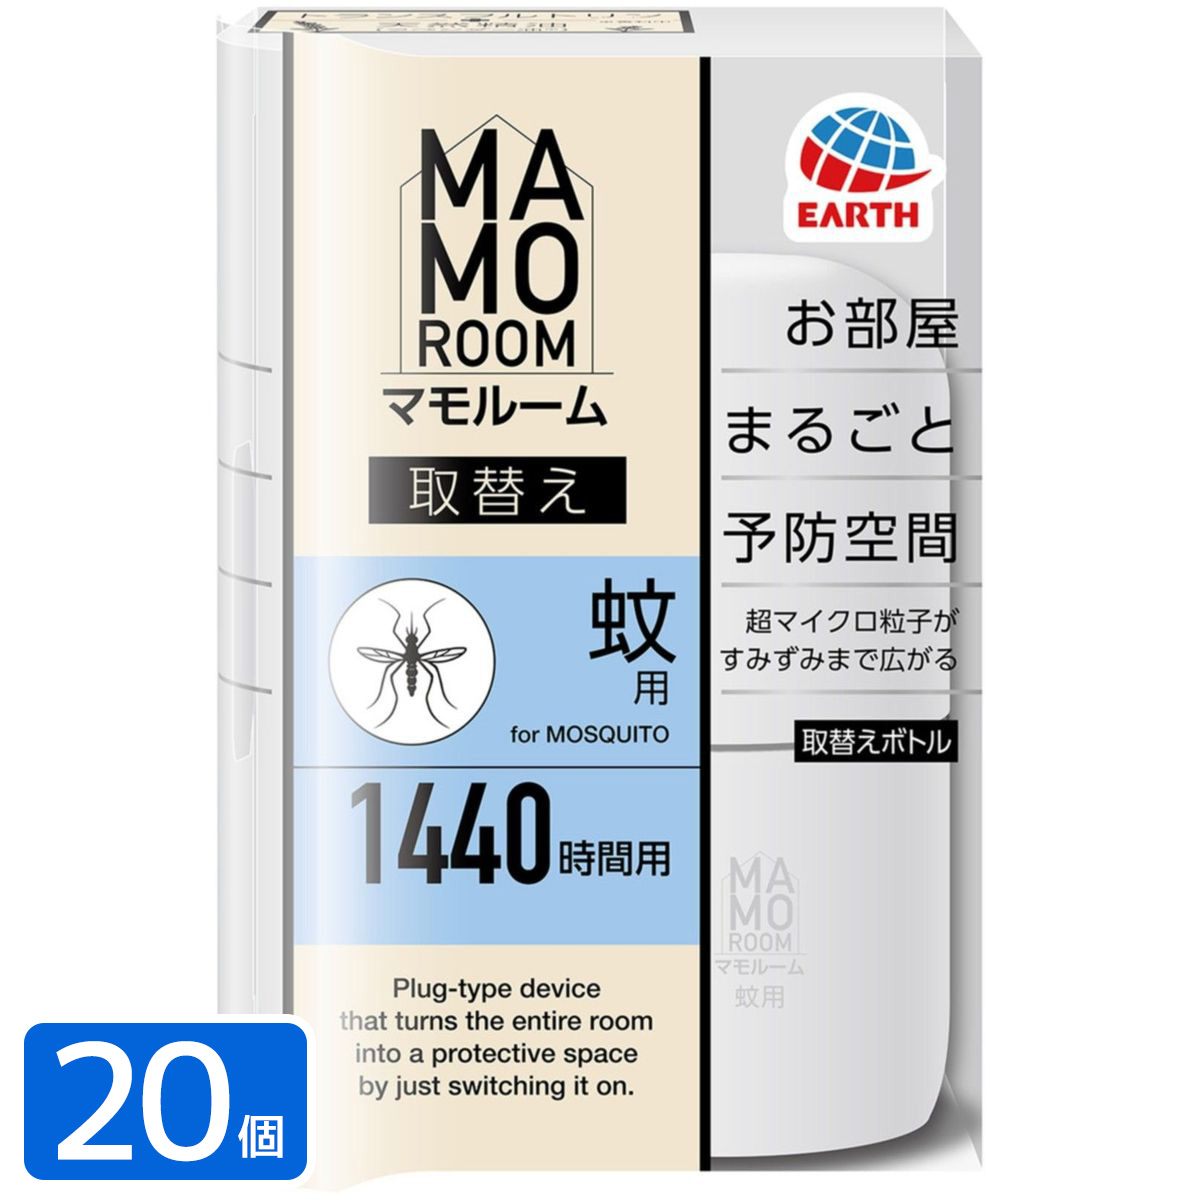 マモルーム 蚊用 1440時間用 取替え 殺虫剤×20本